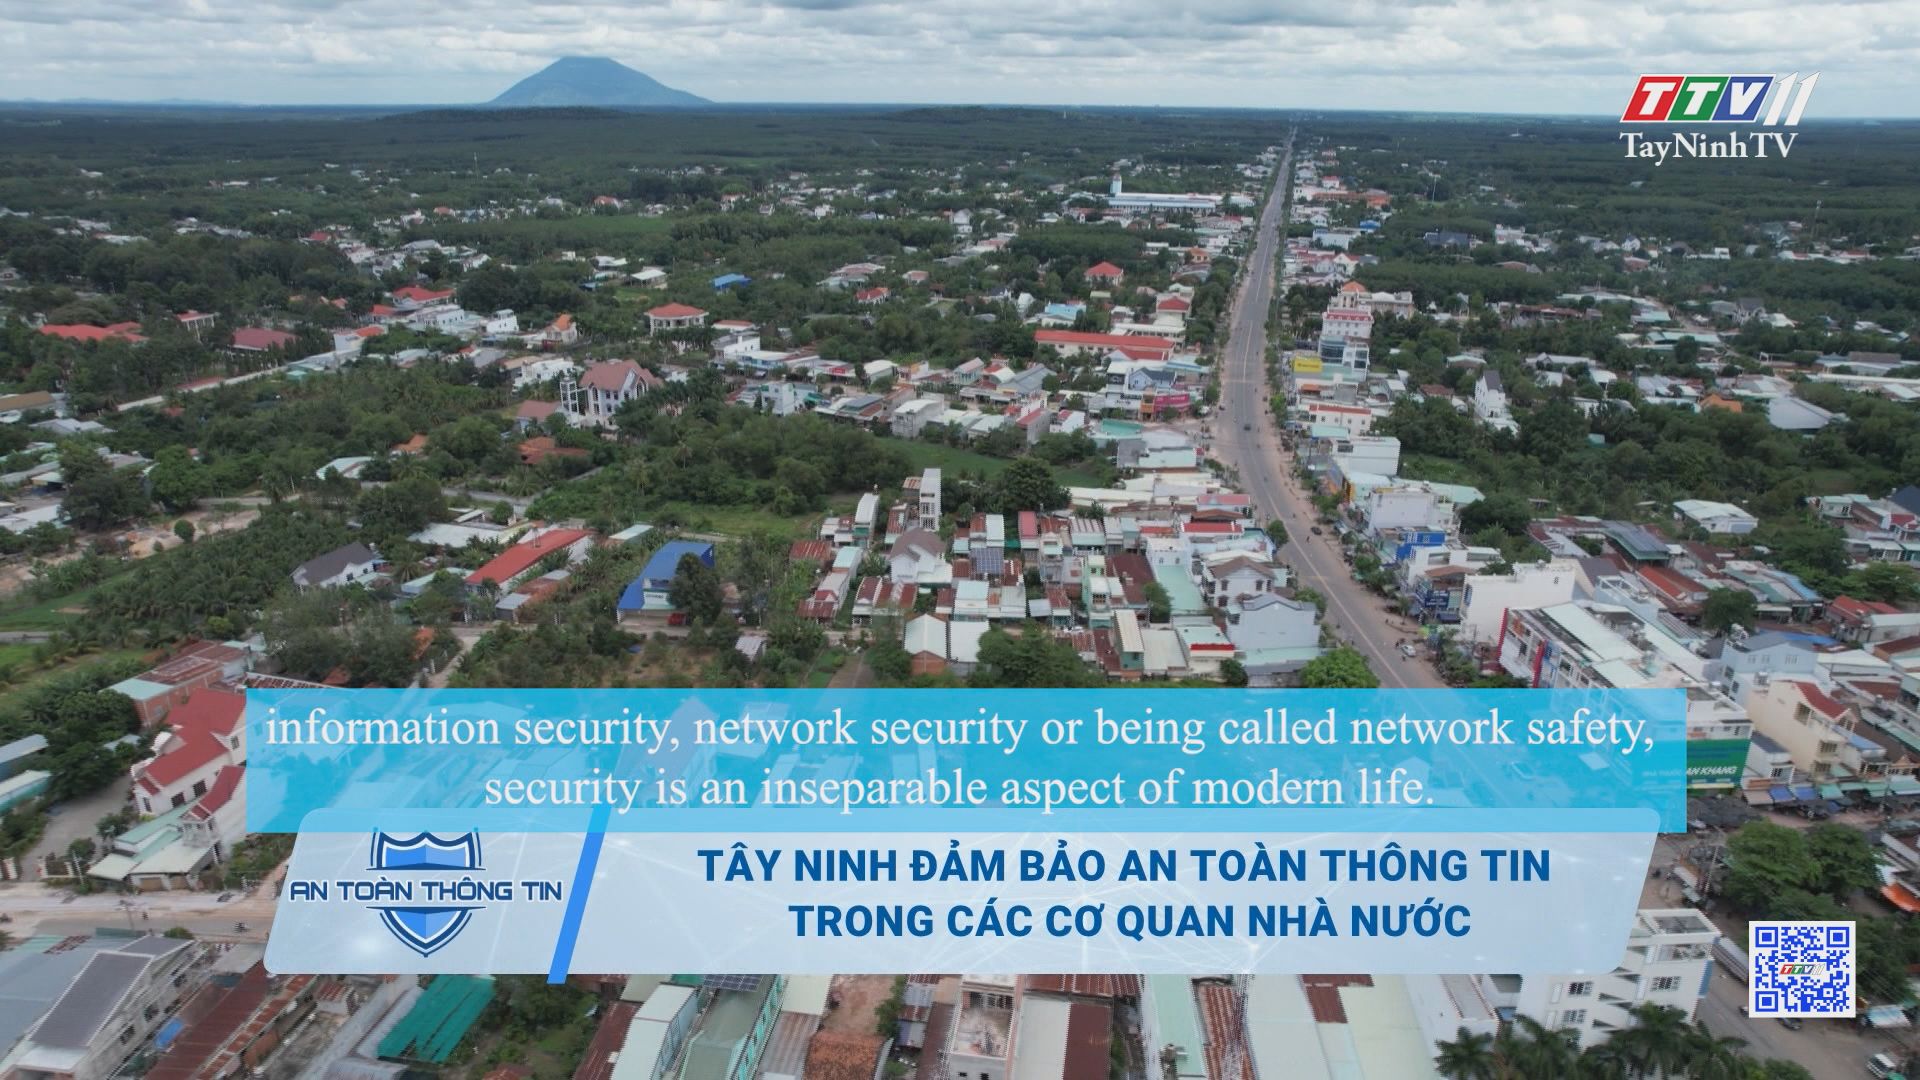 Tây Ninh đảm bảo an toàn thông tin trong các cơ quan nhà nước | AN TOÀN THÔNG TIN | TayNinhTVDVC